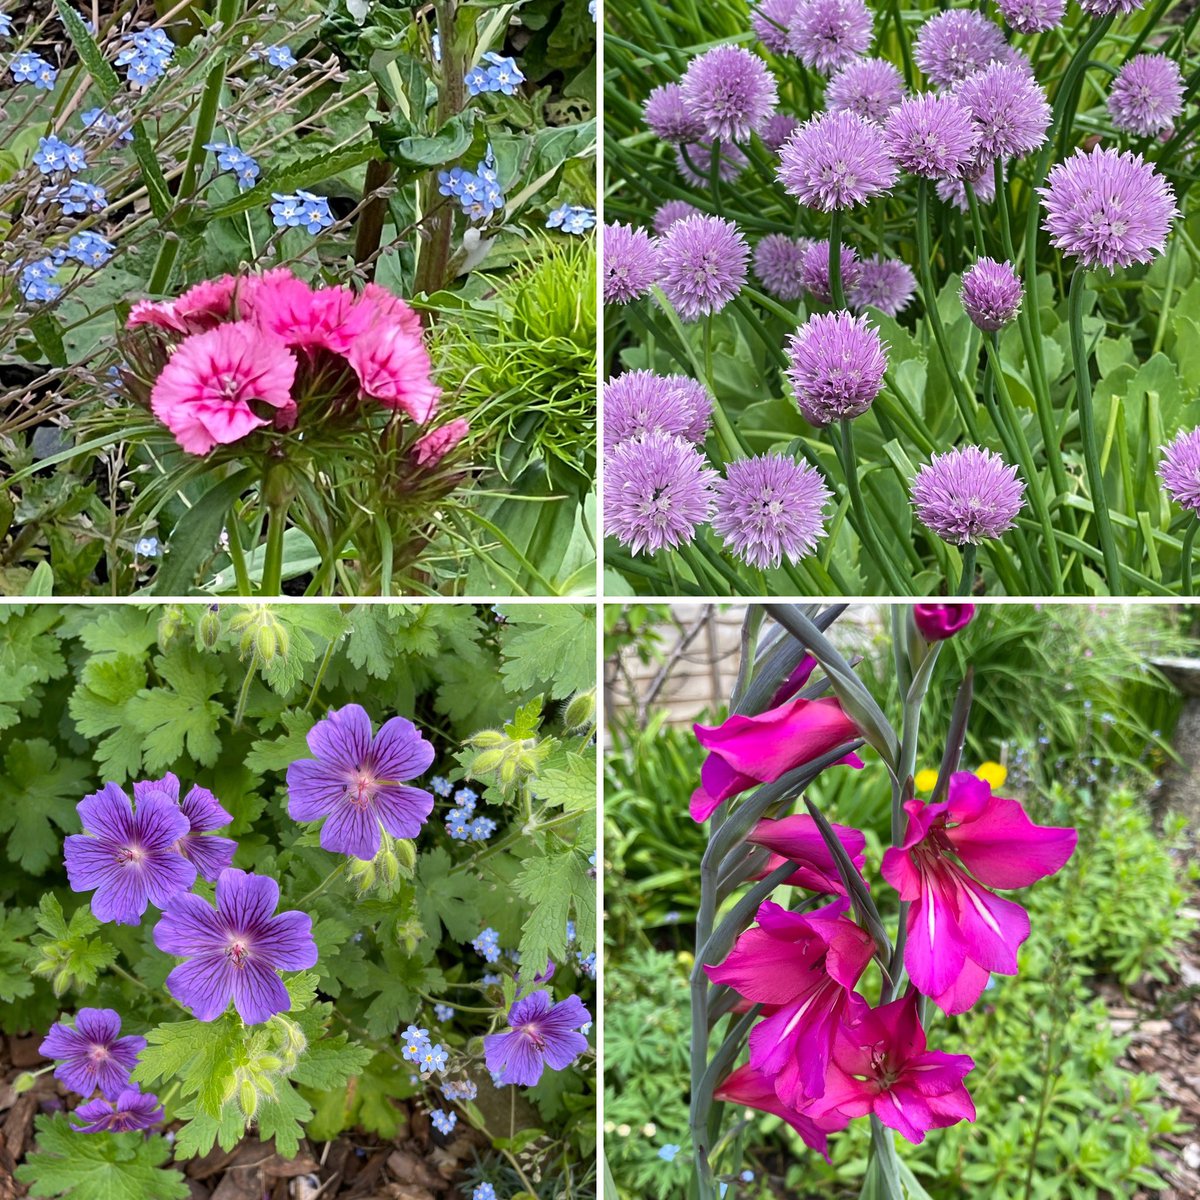 In my Devon garden this week #FlowersOnFriday #flowers